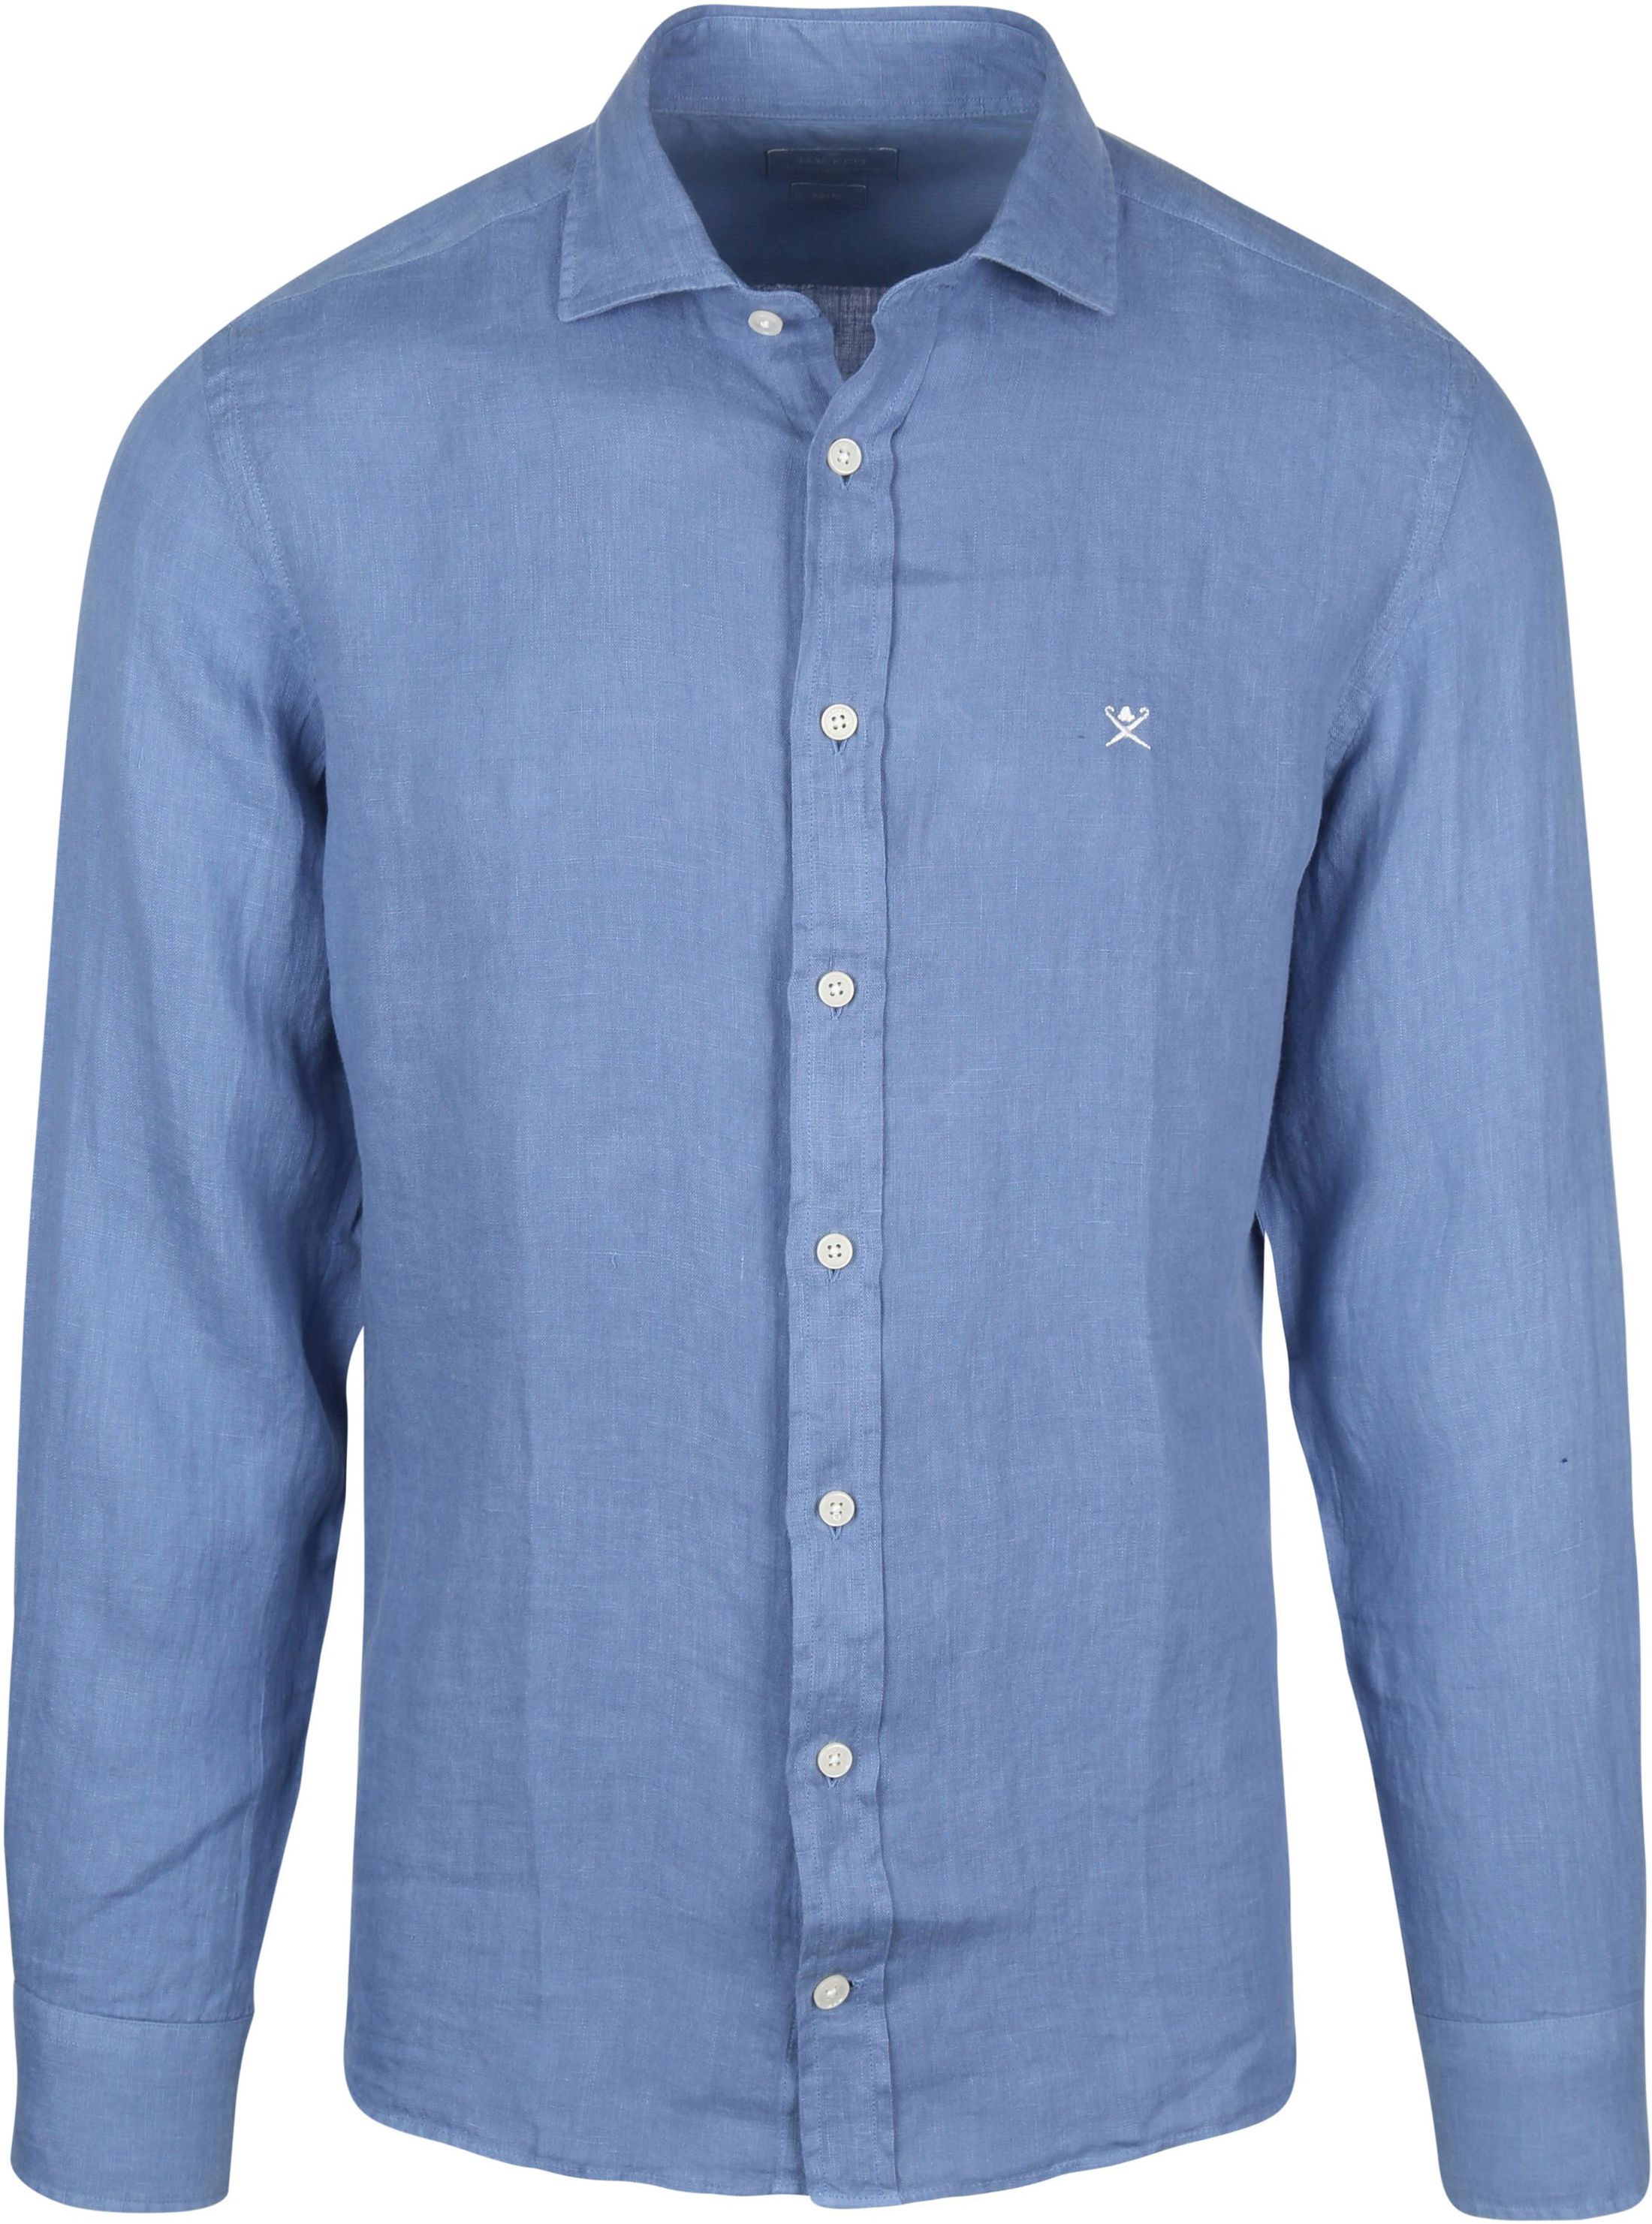 Hackett Shirt Garment Dyed Blue size L